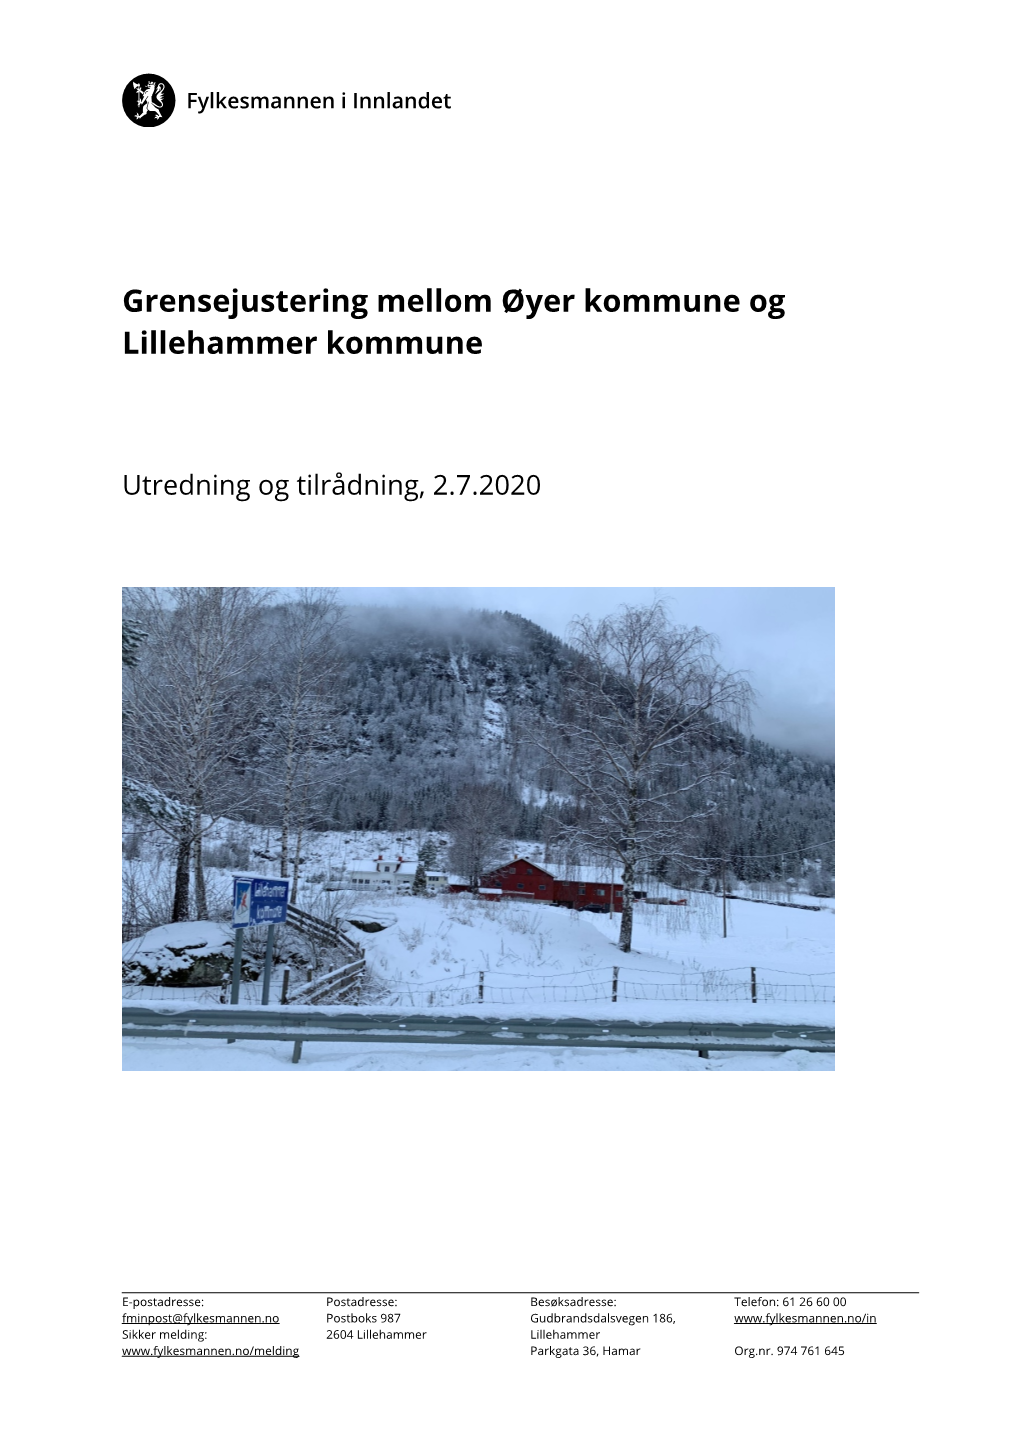 Grensejustering Mellom Øyer Kommune Og Lillehammer Kommune